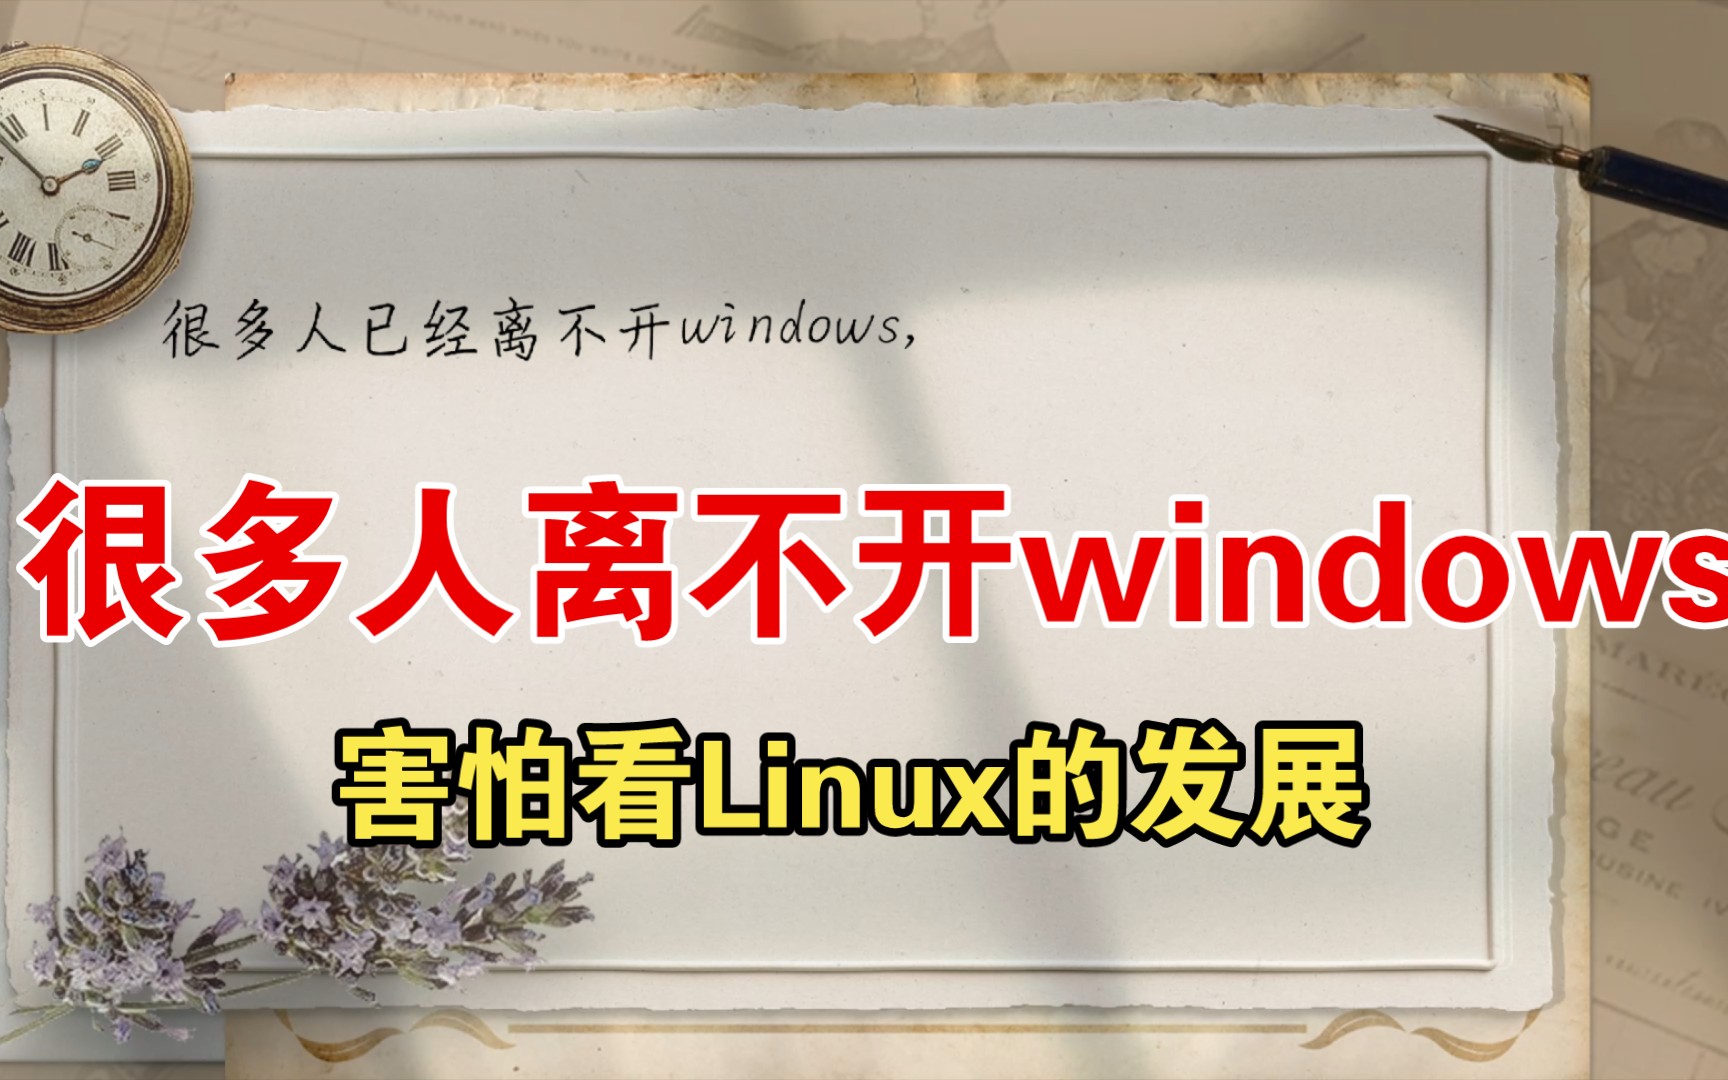 linux切换windows_windows快速切换窗口_切换windows模式